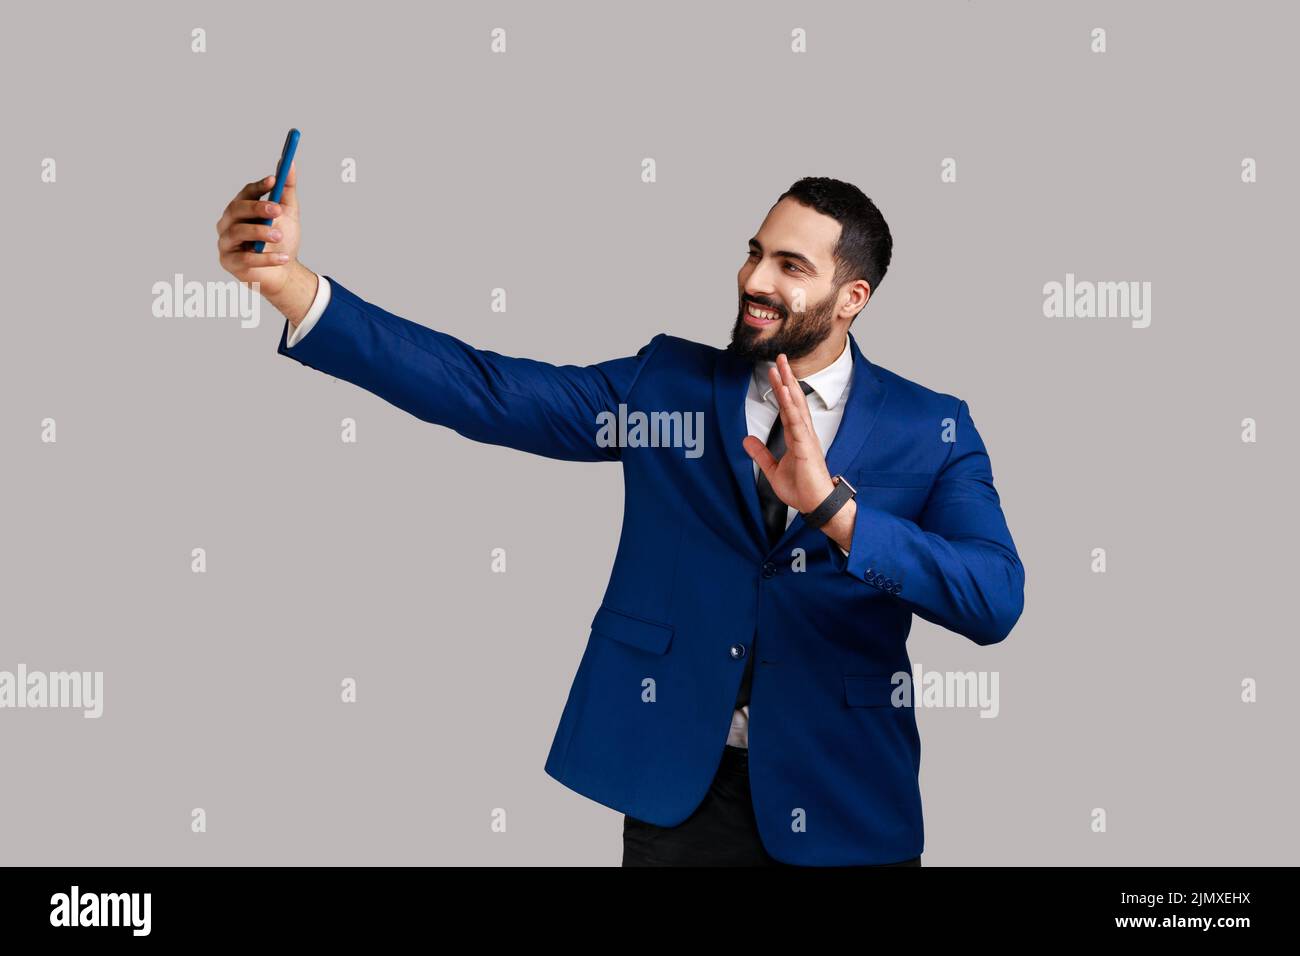 Hombre haciendo selfie en la cámara del smartphone, blogger comunicando, grabación de vídeo para los seguidores, agitando la mano, saludando, llevando traje de estilo oficial. Estudio de interior grabado aislado sobre fondo gris. Foto de stock